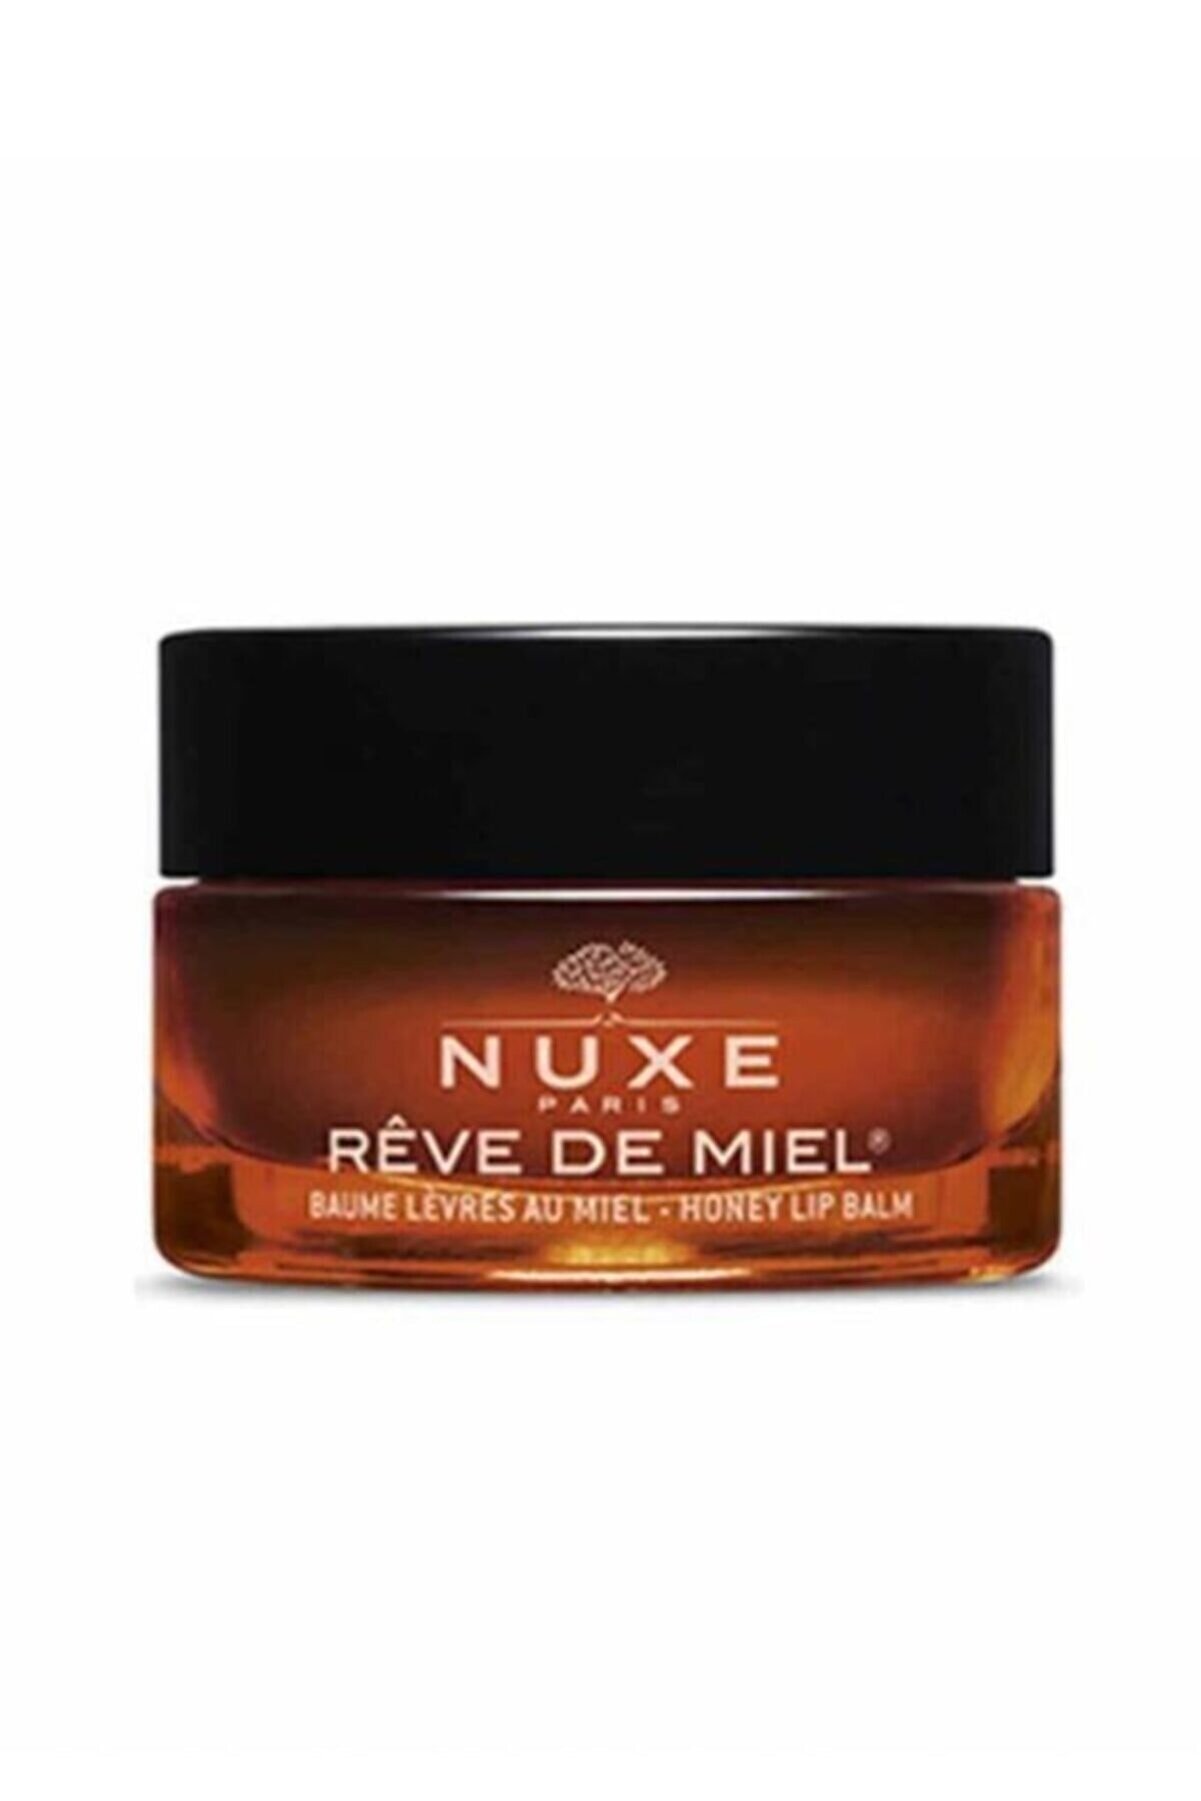 Nuxe Reve De Miel Honey Lip Balm 15 gr - Ballı Dudak Balsamı